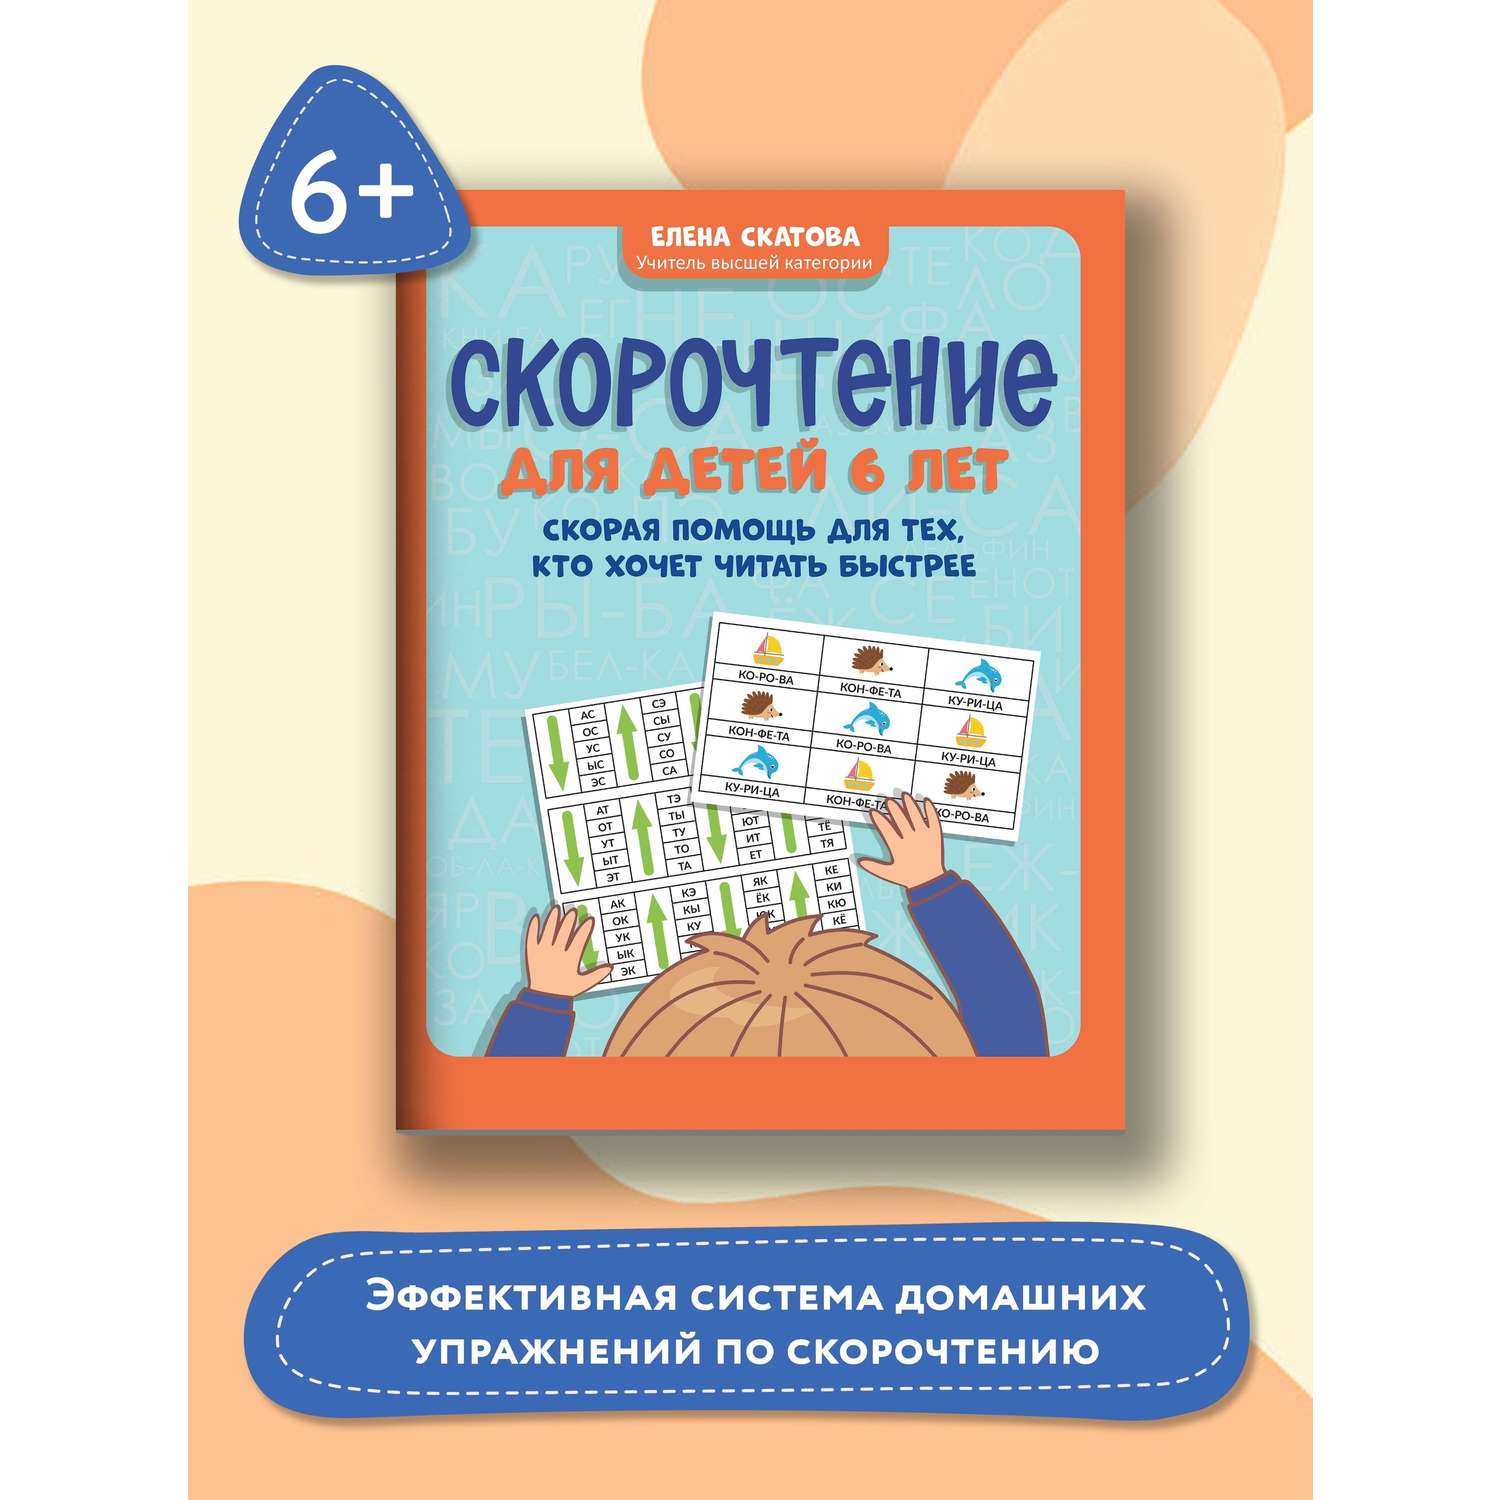 Книга ТД Феникс Скорочтение для детей 6 лет: скорая помощь для тех кто хочет читать быстрее - фото 2